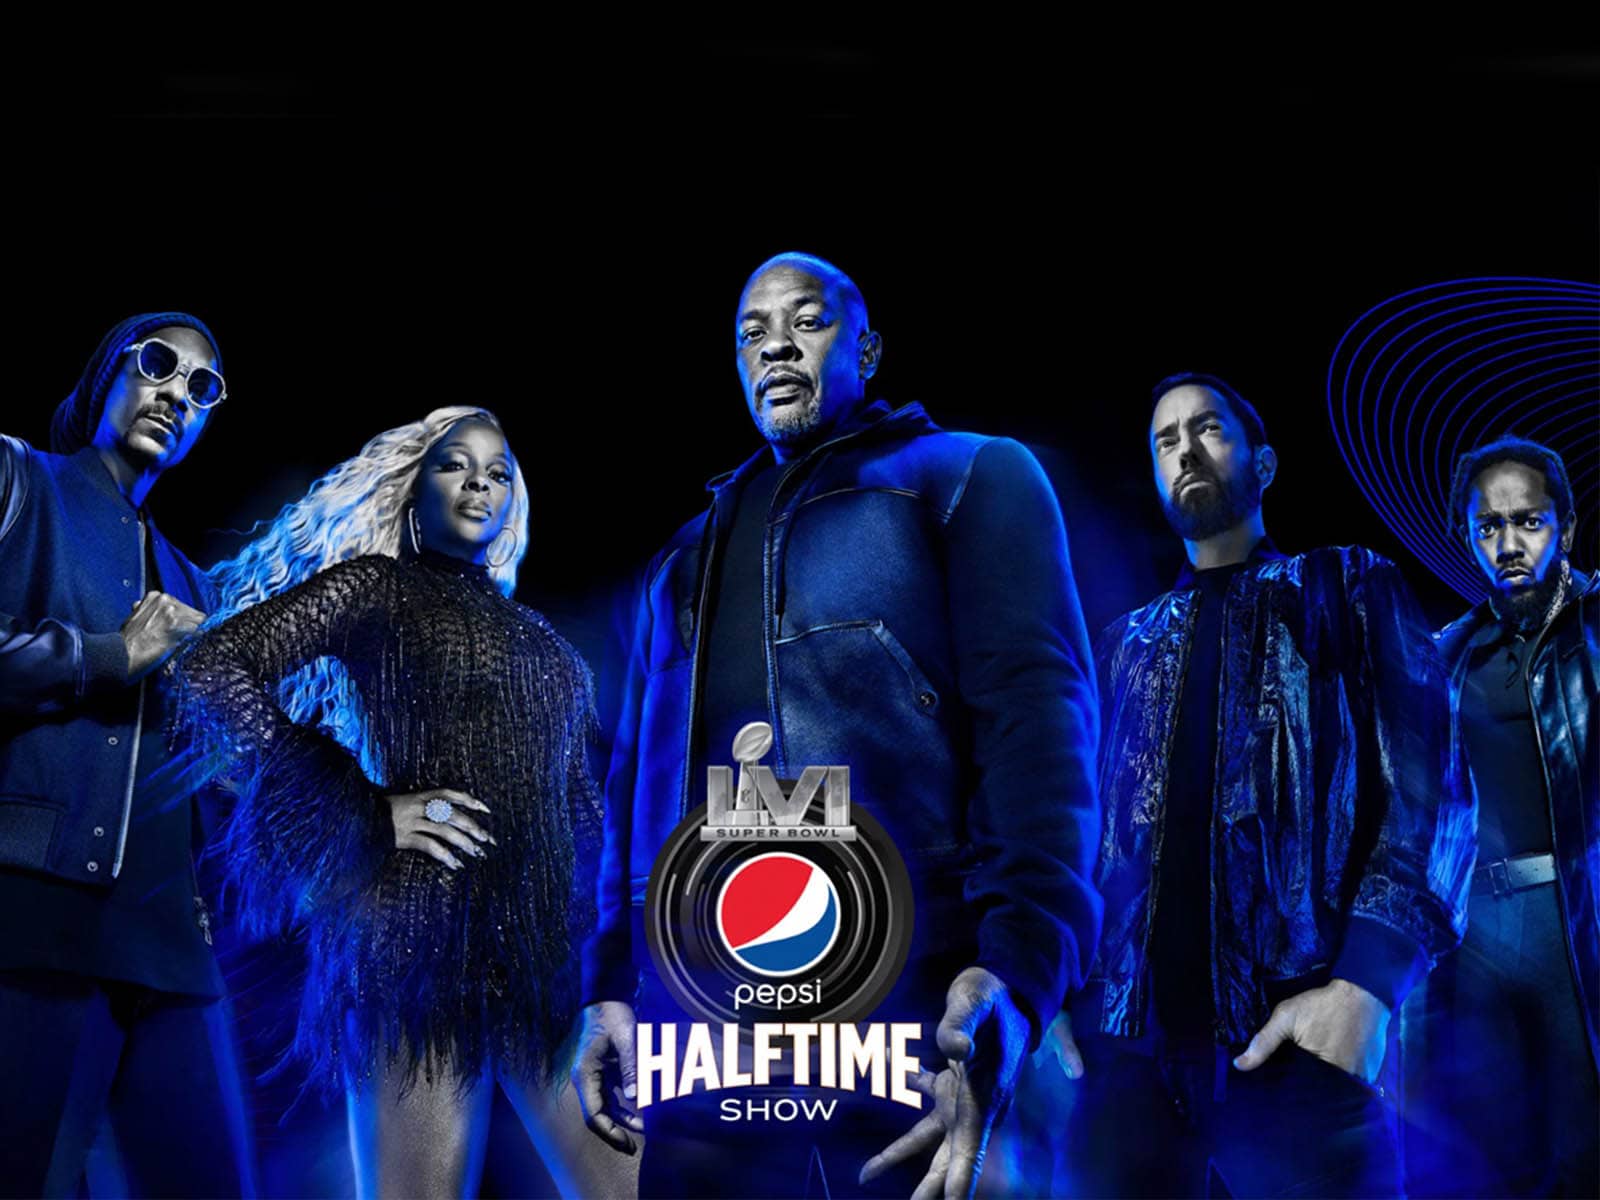 Pepsi rompe su relación de 10 años con la Super Bowl